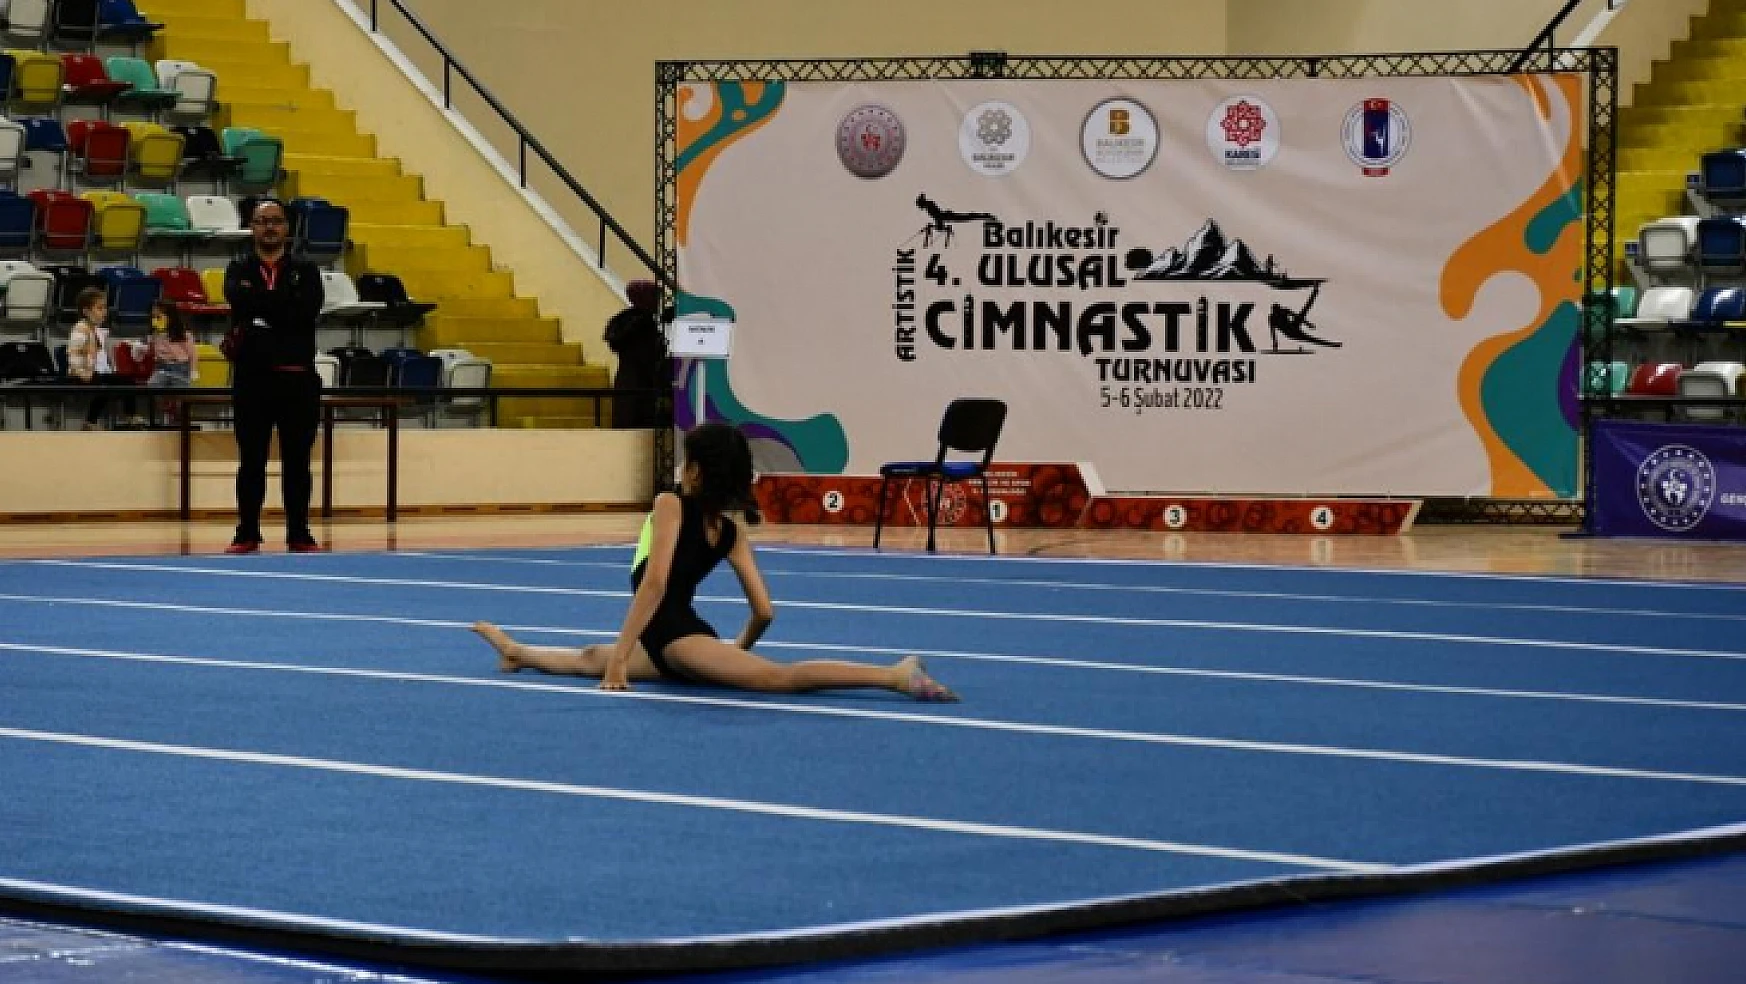 Balıkesir'de ulusal cimnastik turnuvası